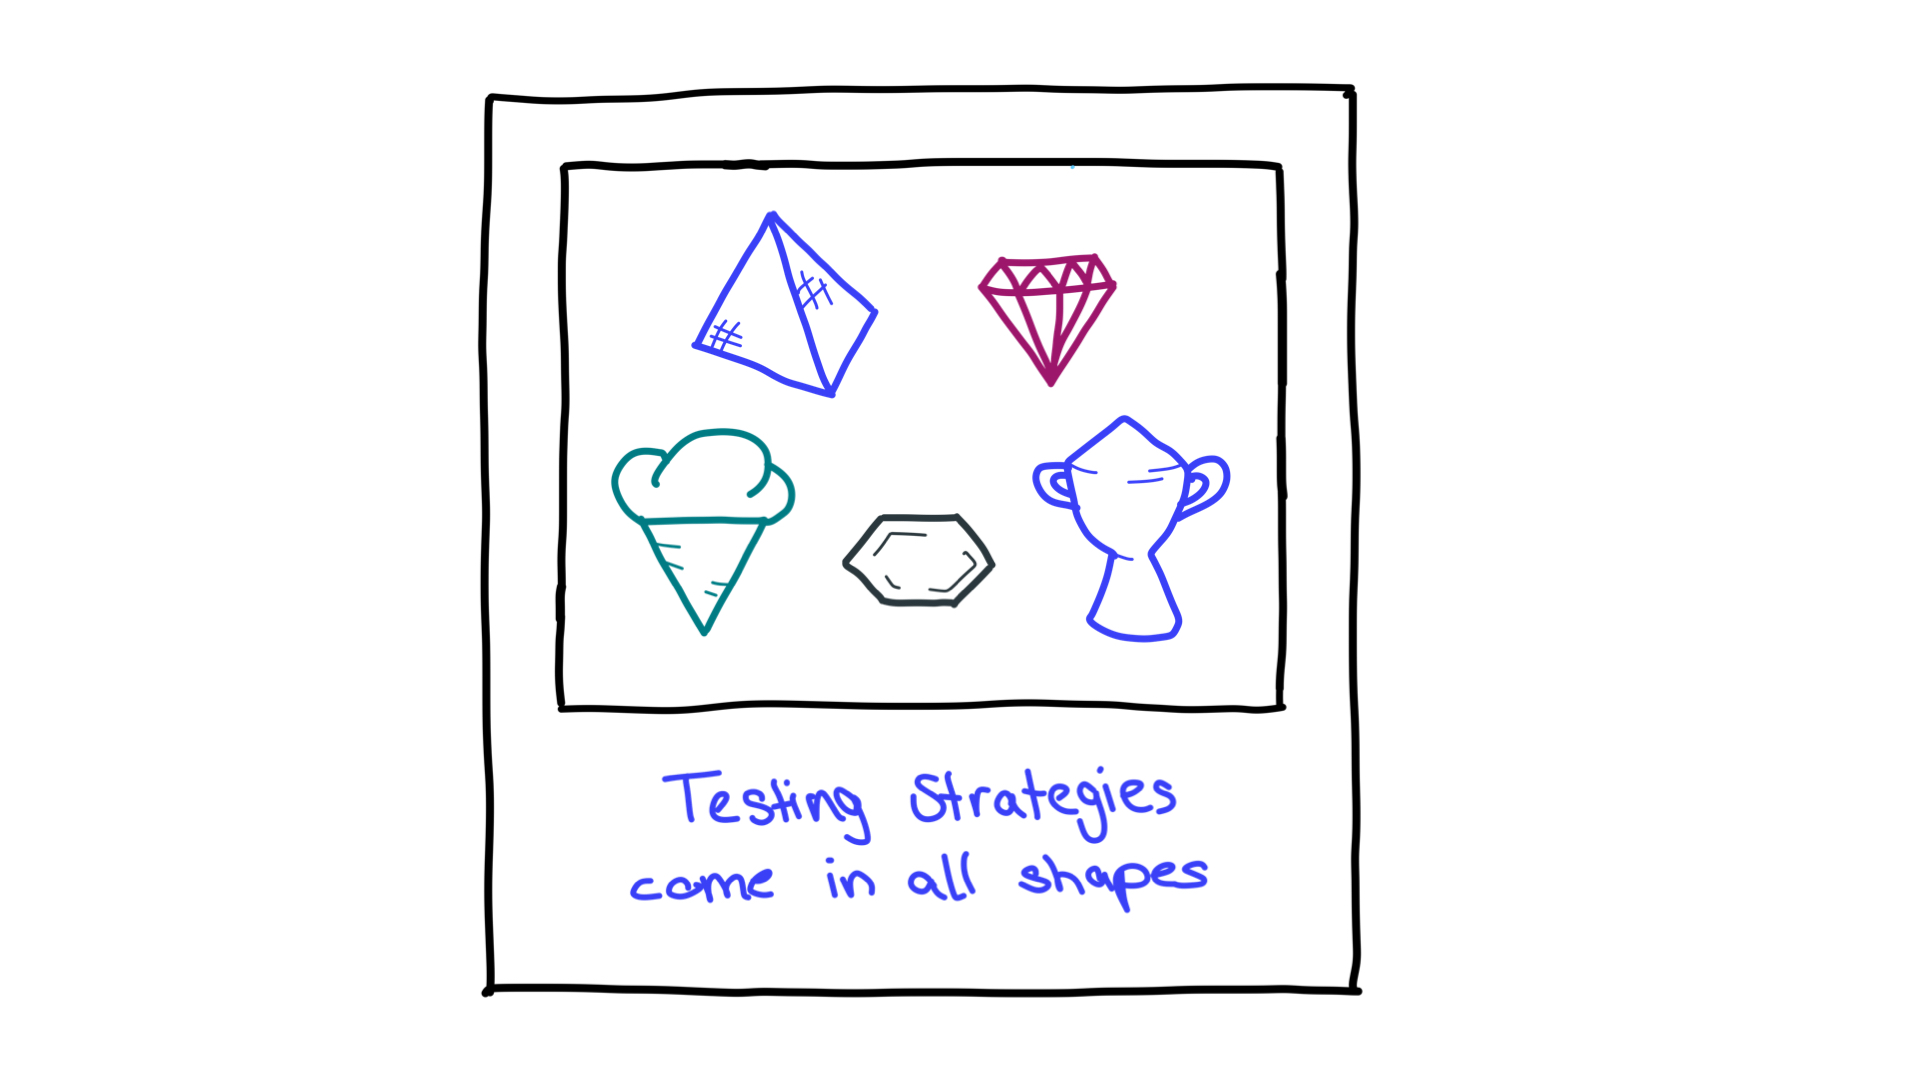 Banyak bentuk seperti piramida, berlian, kerucut es, sarang lebah, dan piala; merepresentasikan strategi pengujian.